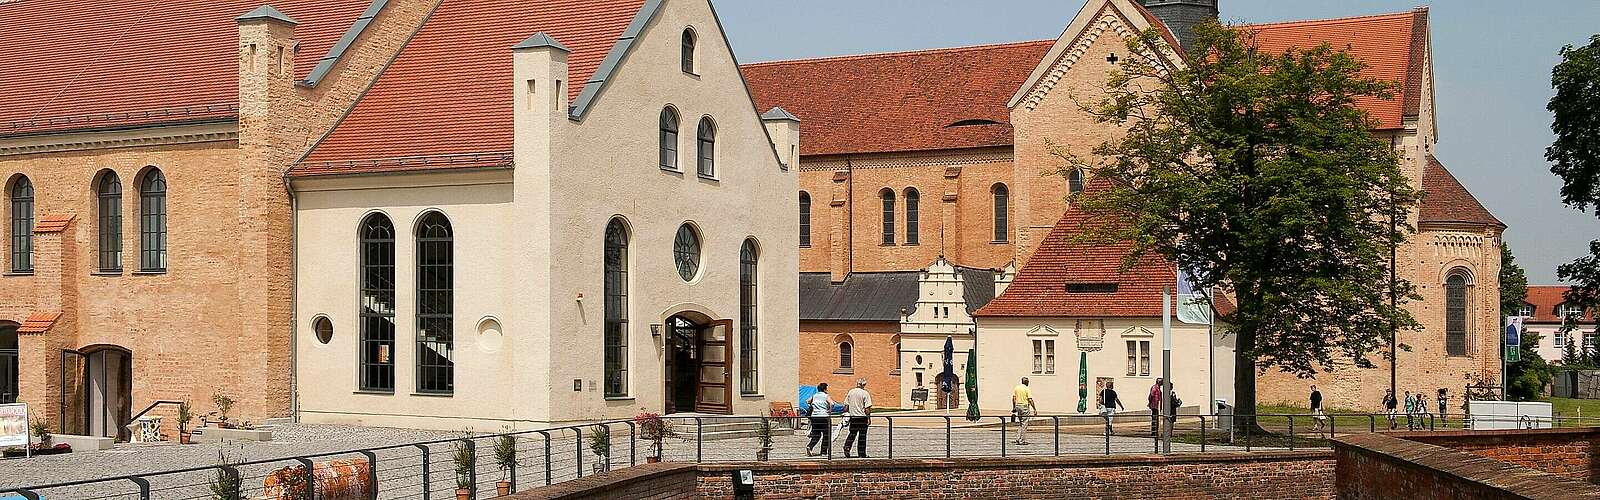 Evangelische Zisterzienserklosterkirche in Doberlug,
        
    

        Foto: Fotograf / Lizenz - Media Import/Erik-Jan Ouwerkerk